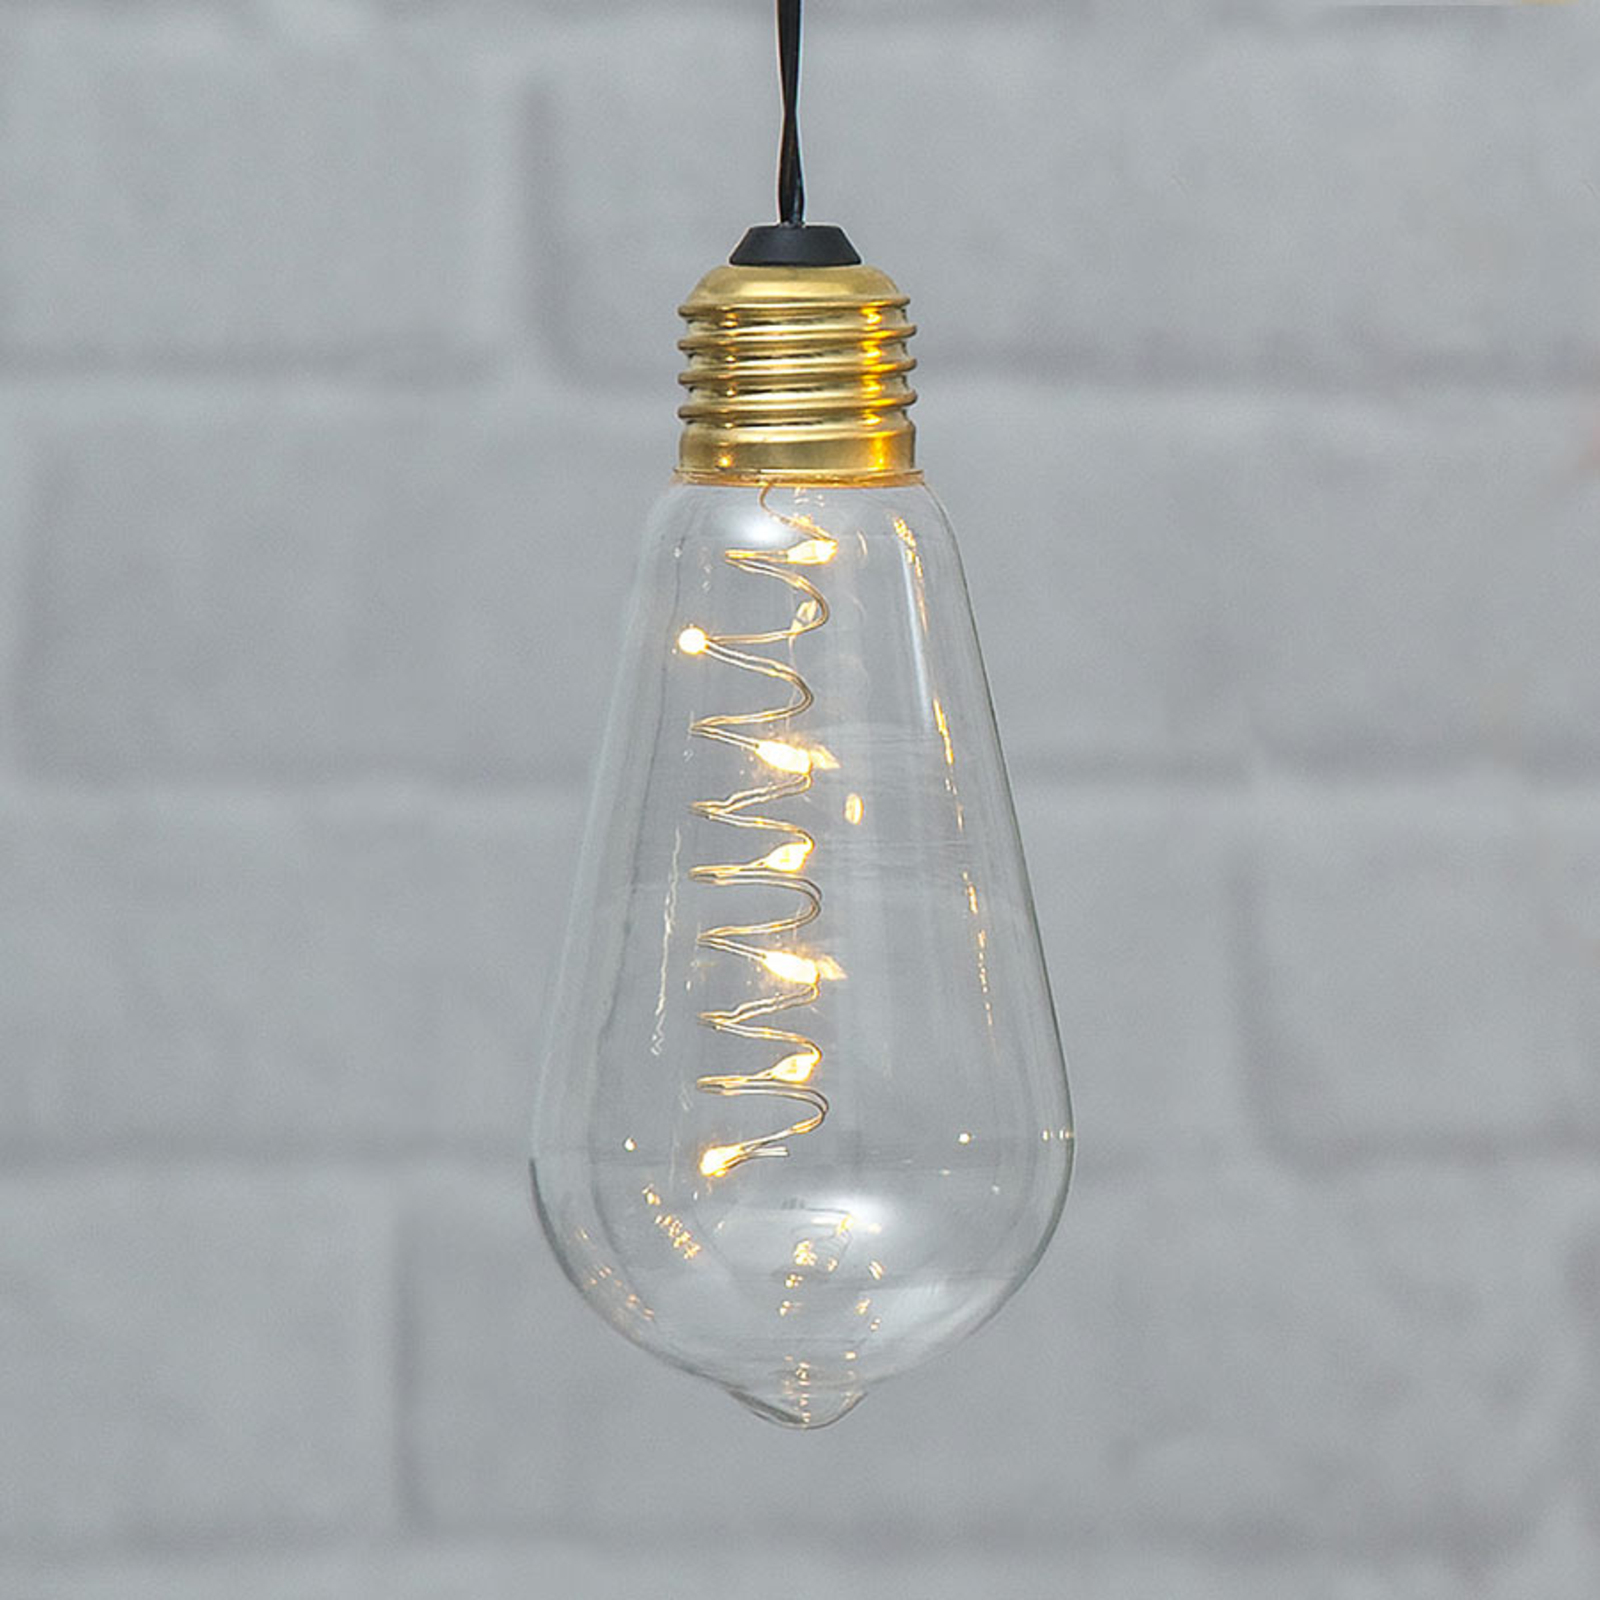 Vintage dekoračná LED lampa Glow s časovačom, číra